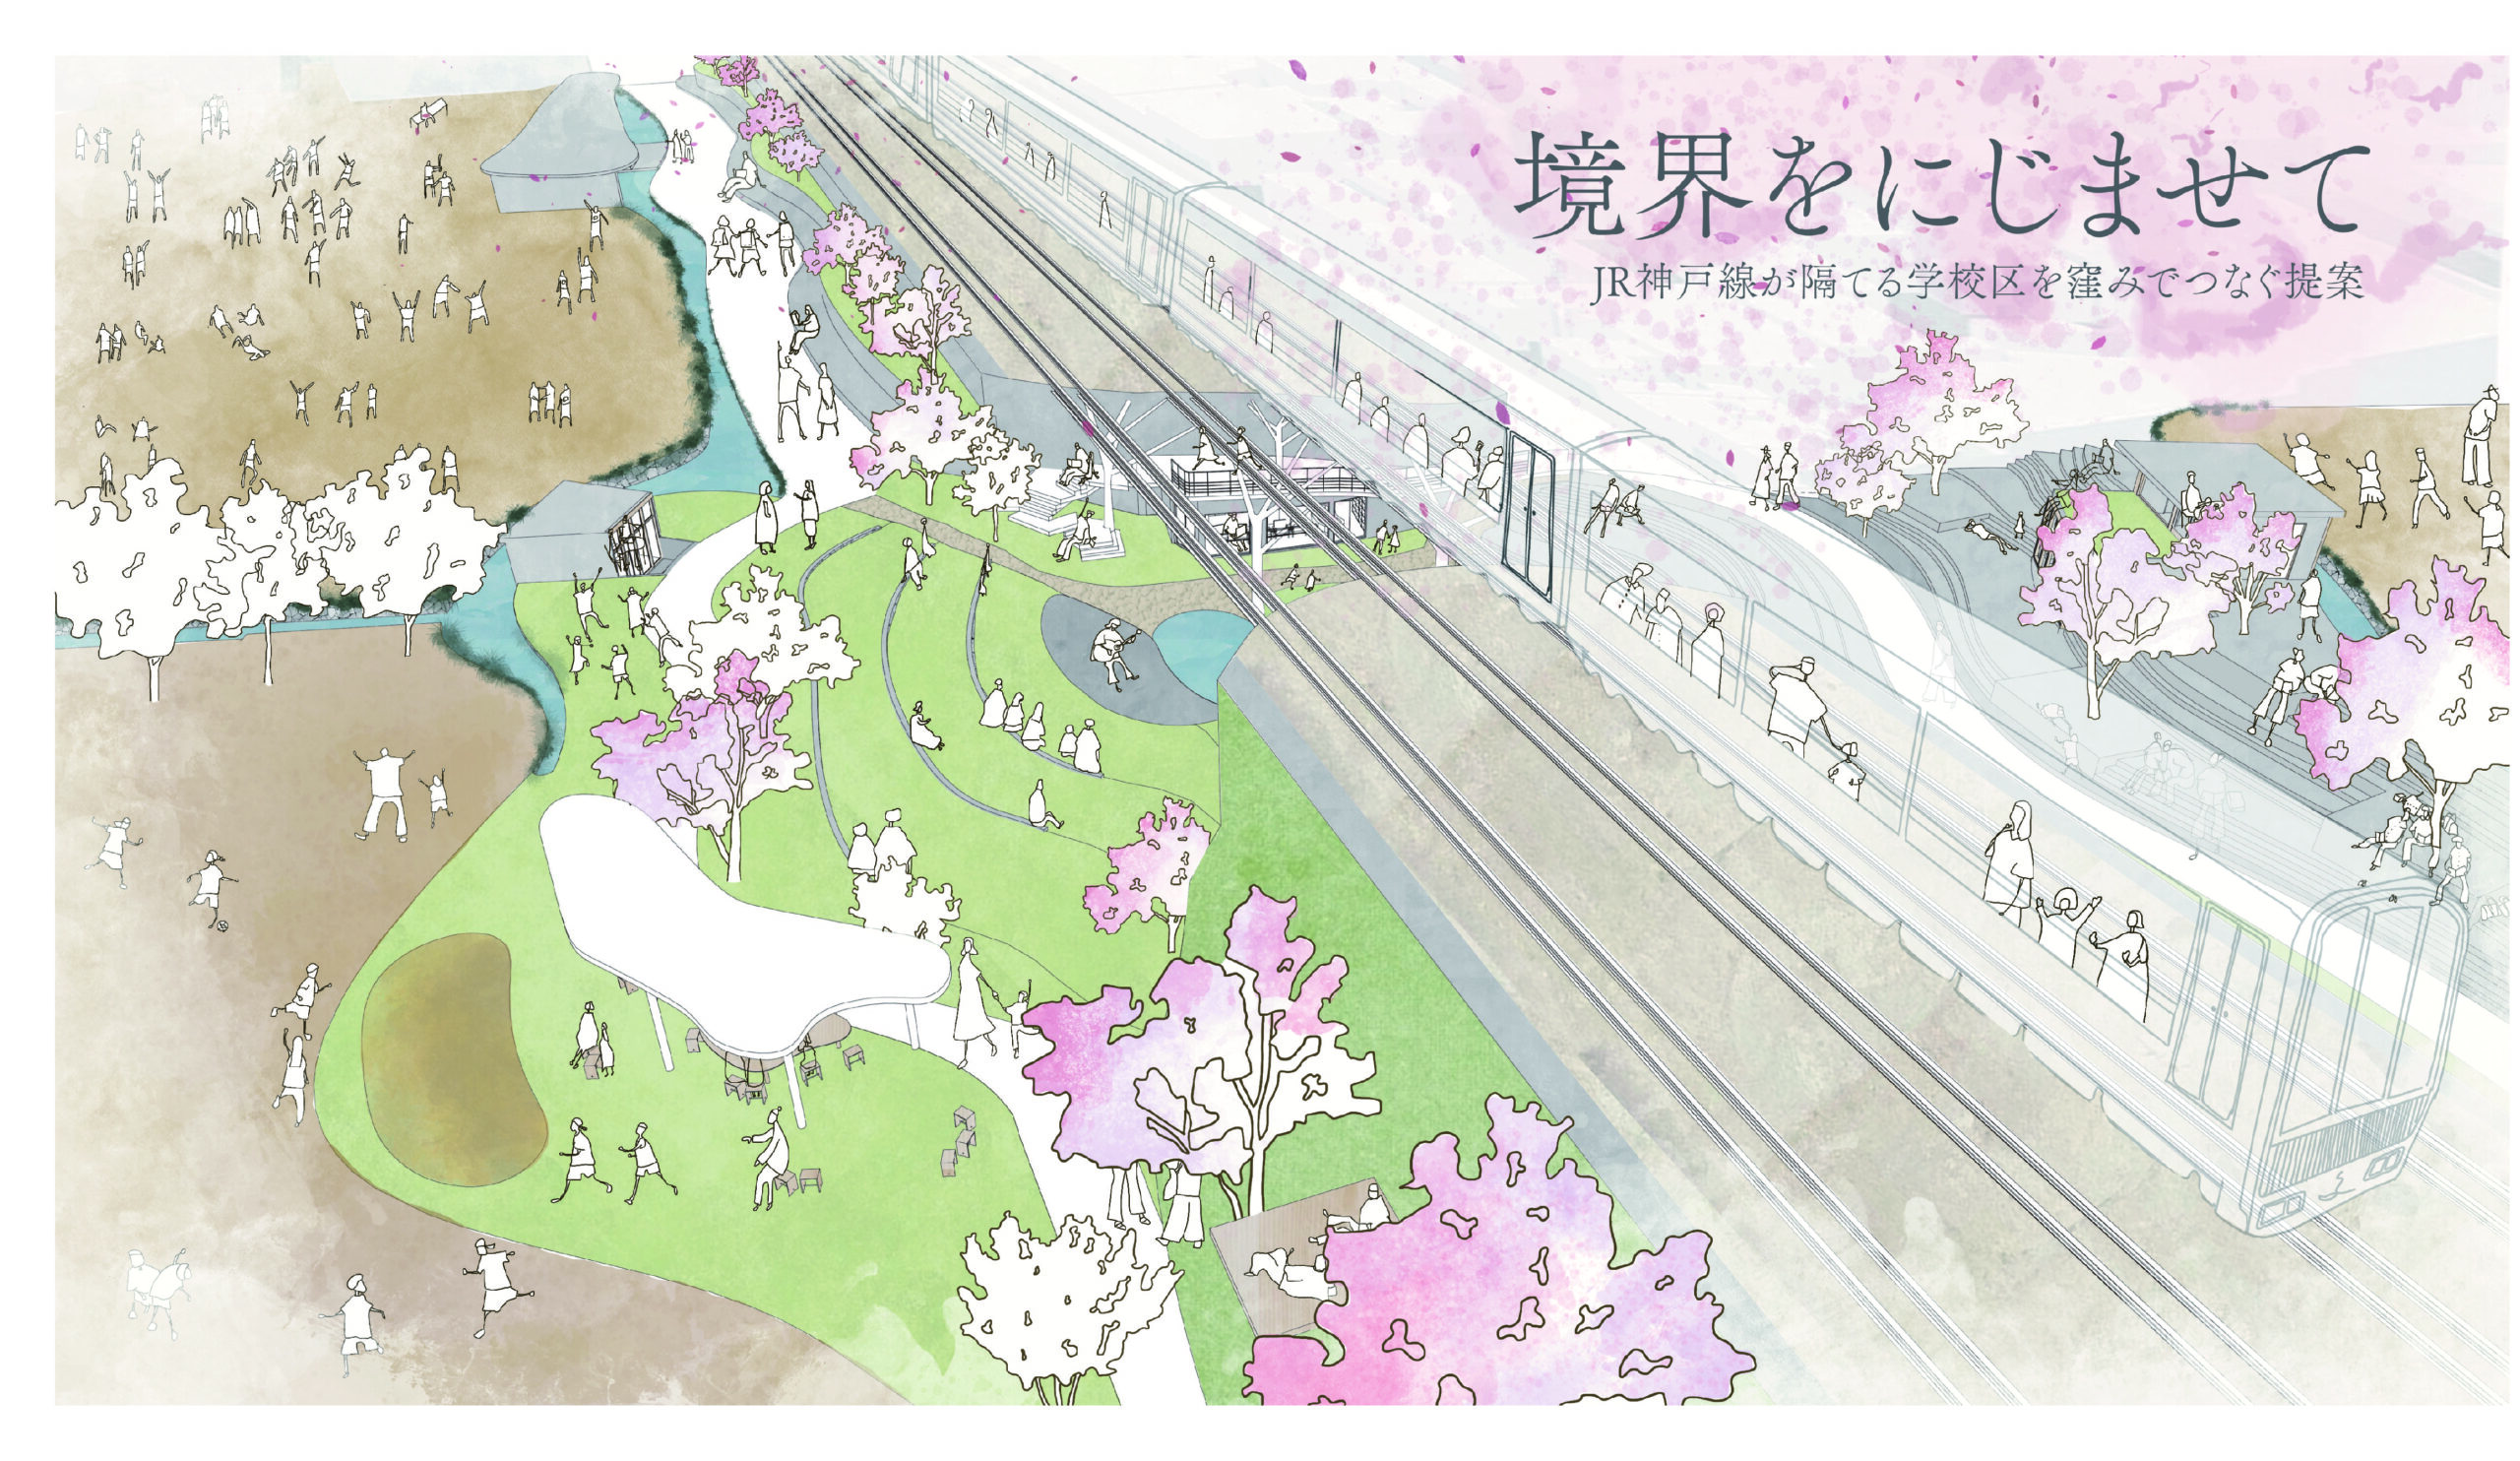 境界をにじませてーJR神戸線が隔てる学校区を窪みでつなぐ提案